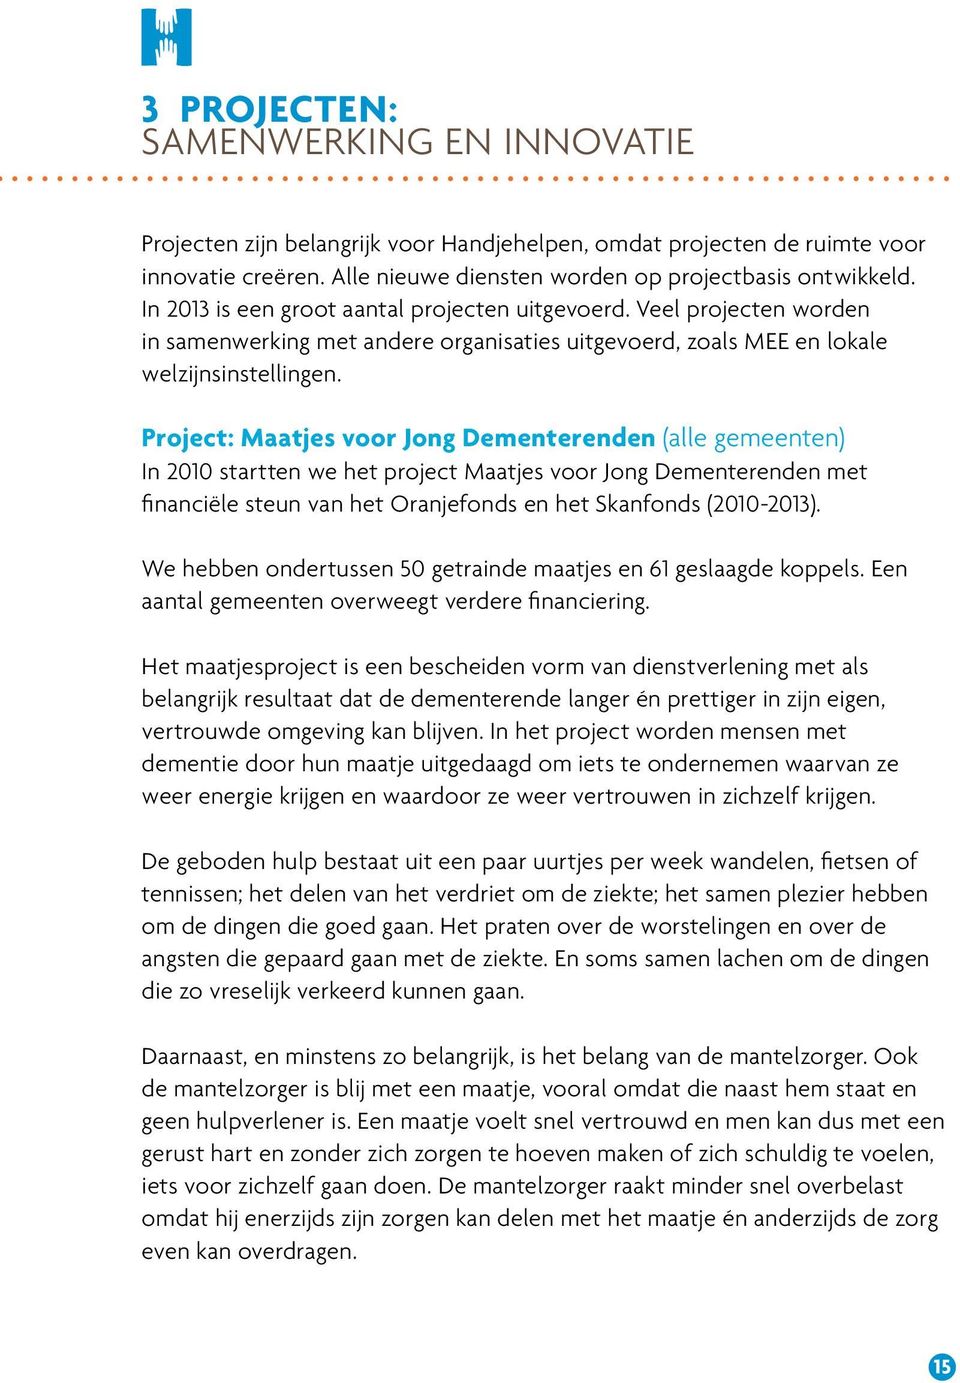 Project: Maatjes voor Jong Dementerenden (alle gemeenten) In 2010 startten we het project Maatjes voor Jong Dementerenden met financiële steun van het Oranjefonds en het Skanfonds (2010-2013).